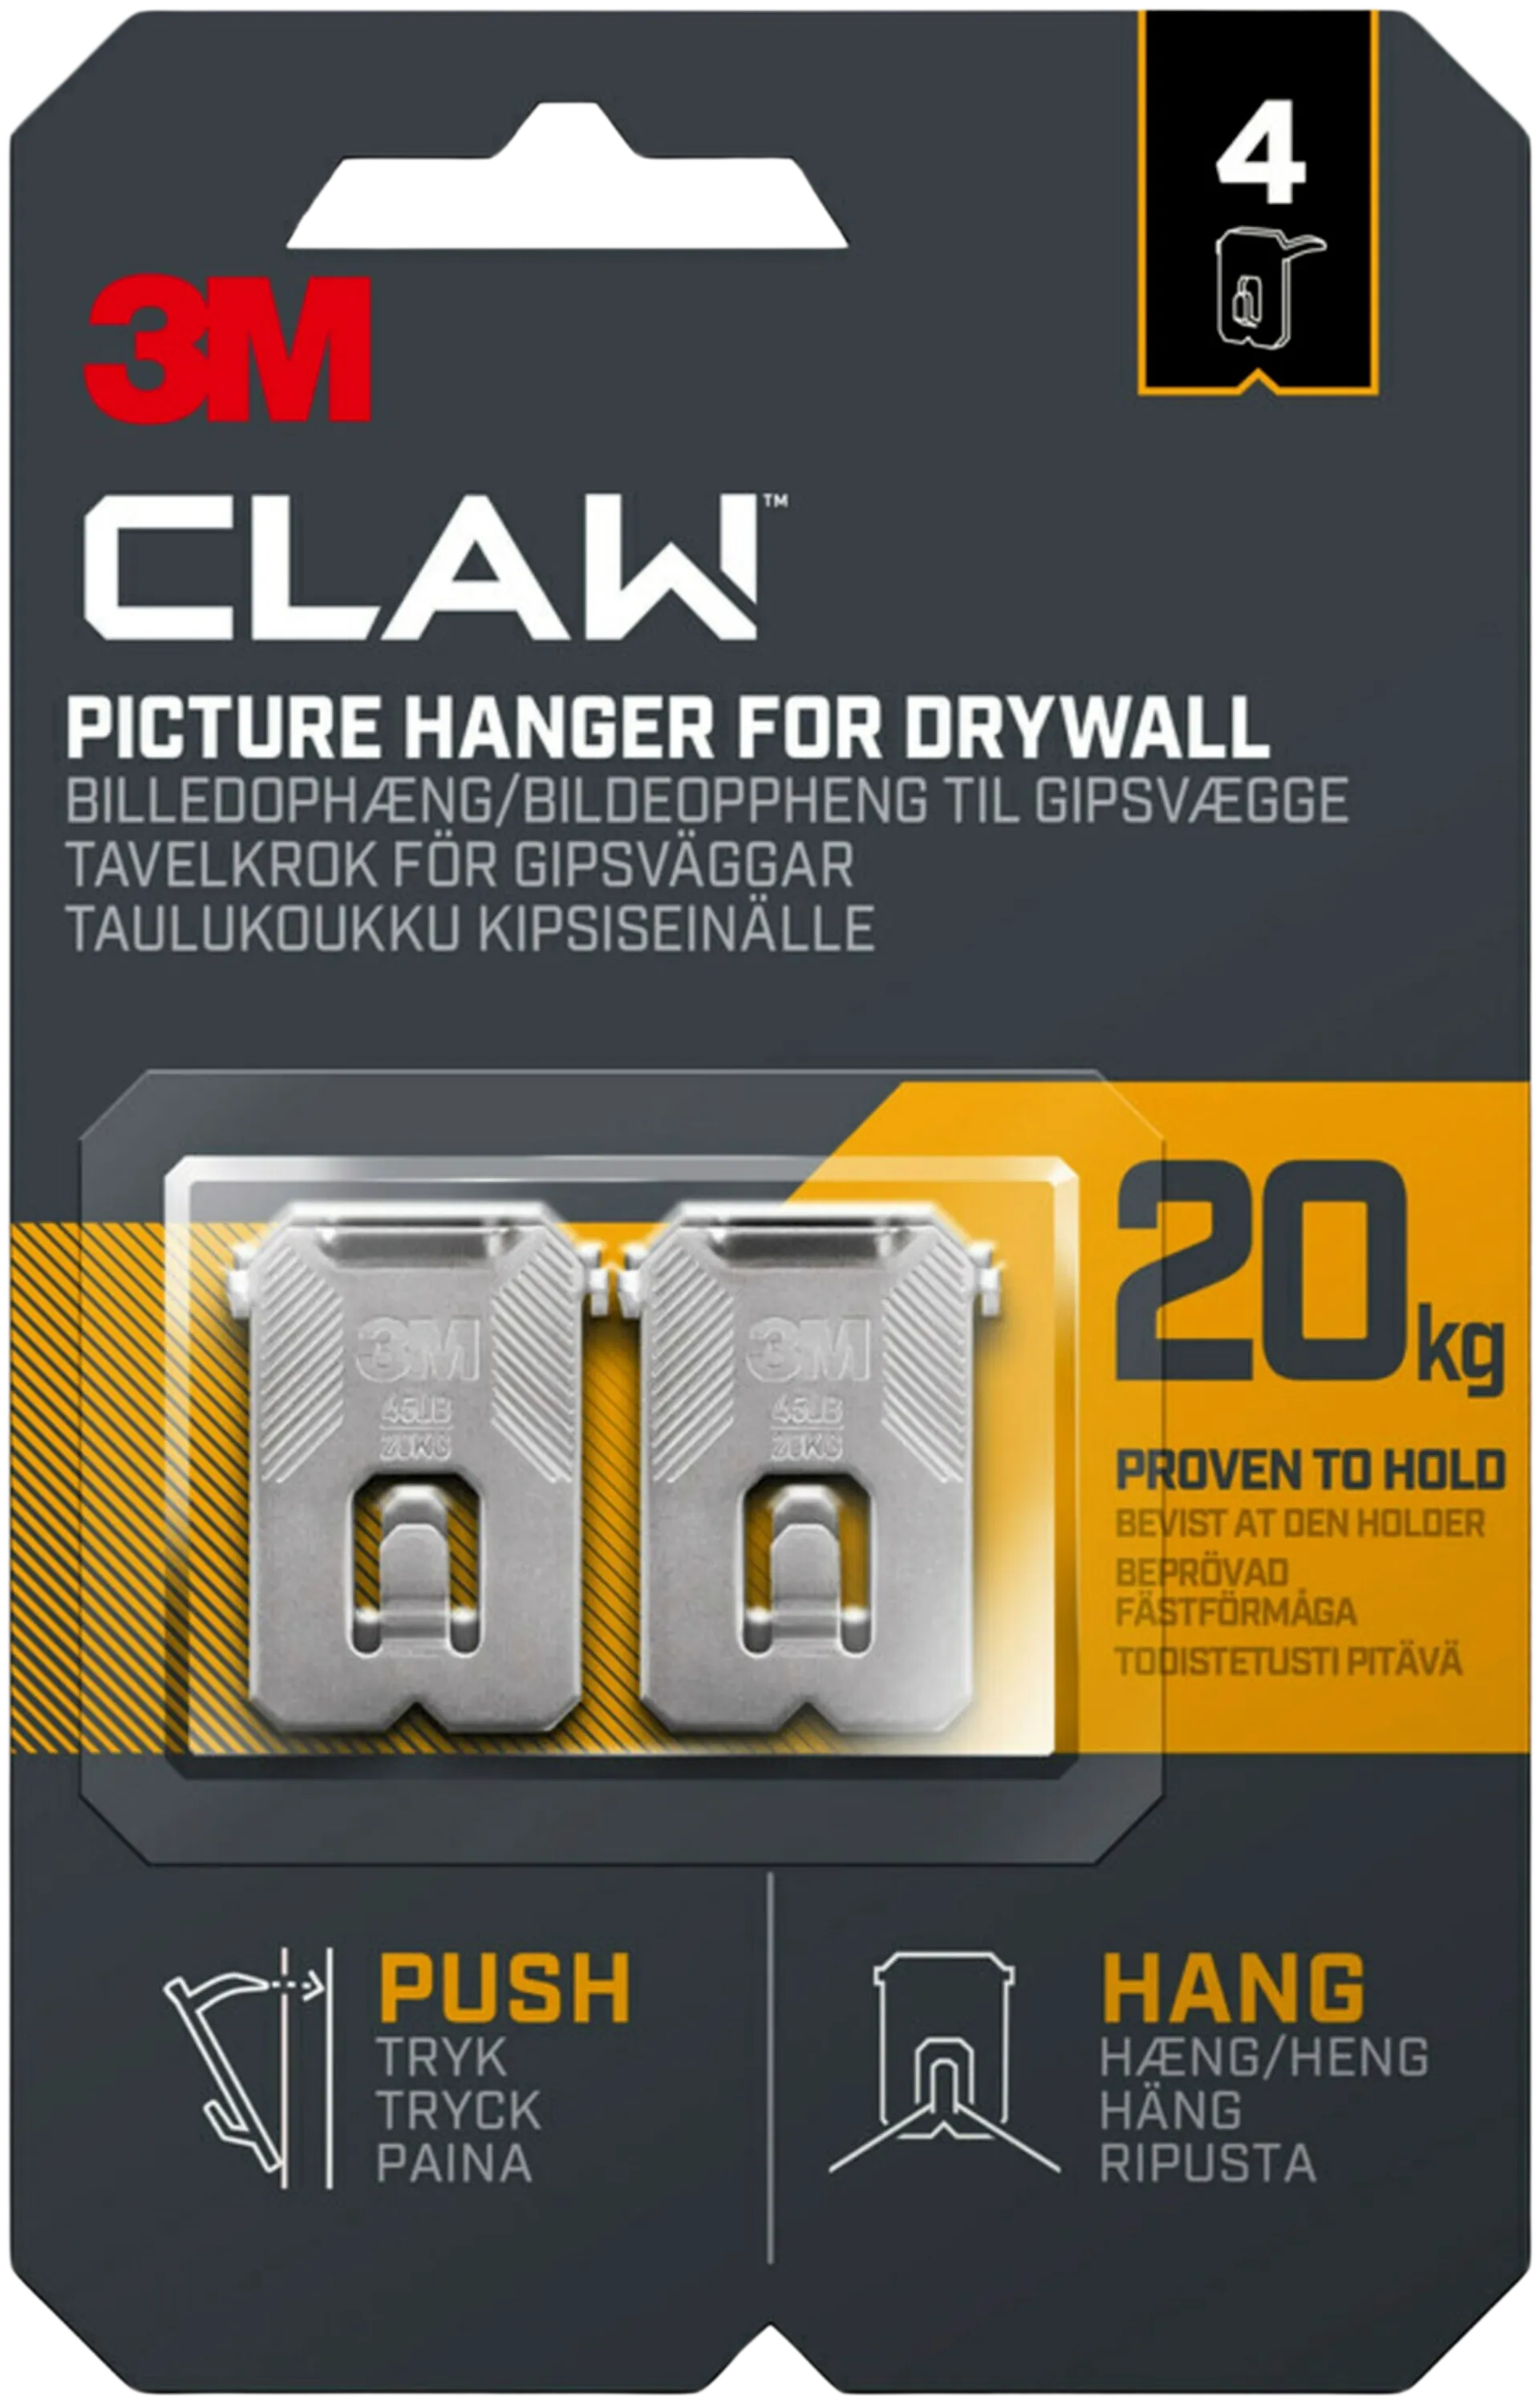 3M CLAW™-taulukoukku kipsilevylle, 20 kg 3PH20-4UKN, 4 ripustuskoukkua - 1